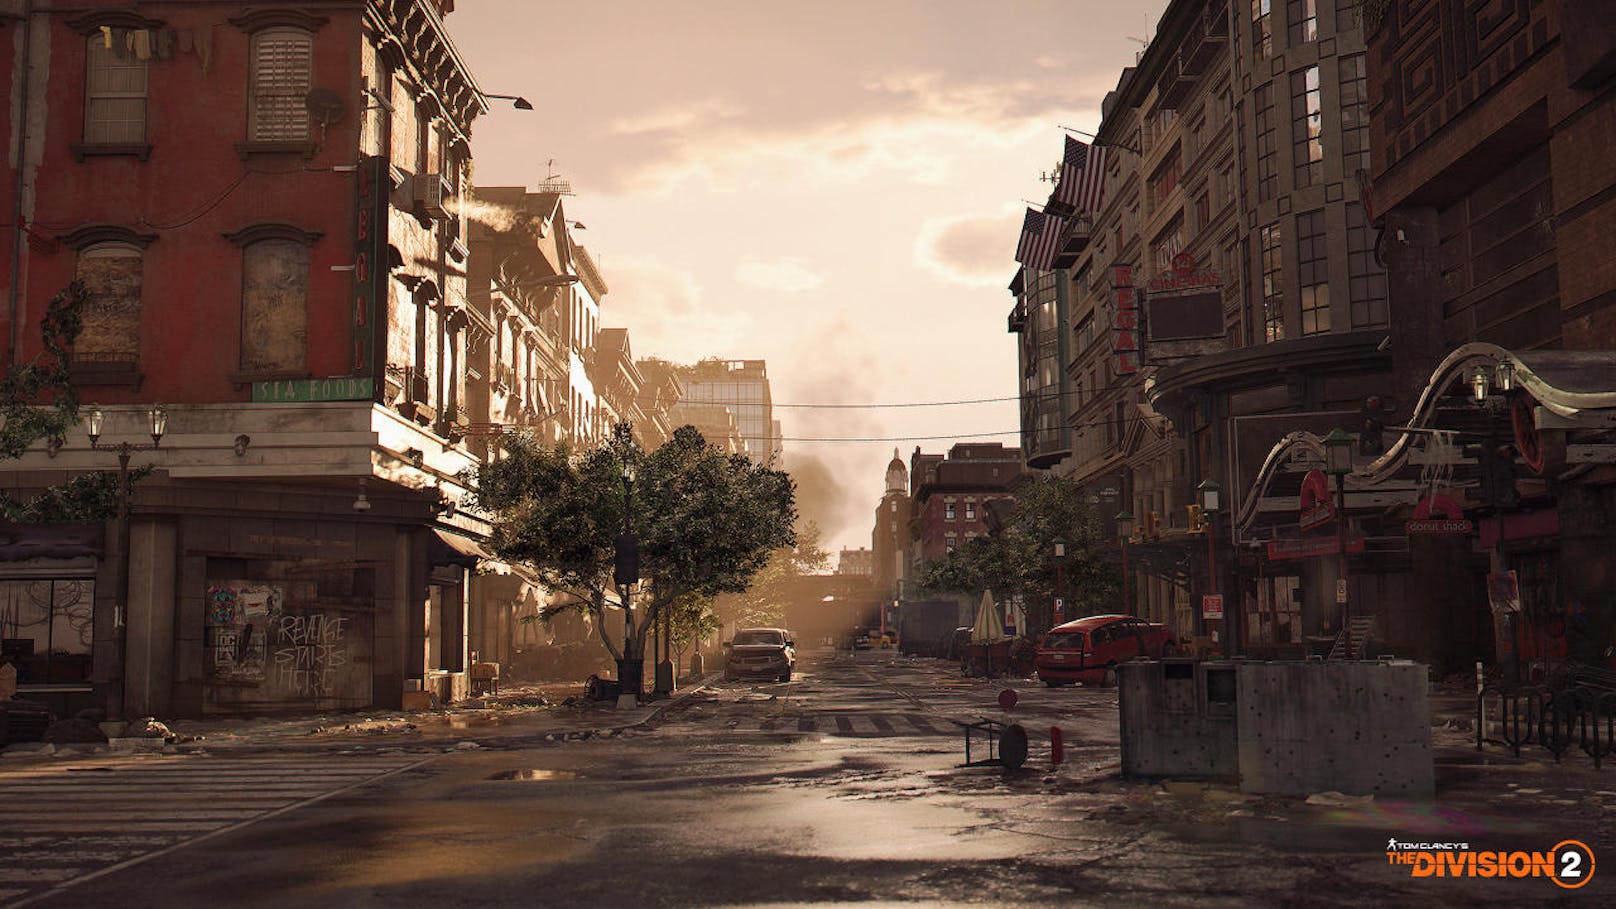 Ubisoft veröffentlichte einen neuen Trailer zu Tom Clancy's The Division 2 mit exklusiven Einblicken in die Dark Zones. Bei dem gescheiterten Versuch, Washington D.C. von einem tödlichen Virus zu befreien, entstanden diese Quarantäne-Bereiche. Wo einst eine unzureichend getestete Chemikalie eingesetzt wurde, müssen die Spieler nun Missionen erledigen und sich einen Weg durch den Pfad der Zerstörung bahnen. Tom Clancy's The Division 2 erscheint am 15. März 2019 auf der Xbox One, PlayStation 4 und auf Windows-PC. <a href="https://www.youtube.com/watch?v=fXMirbFtchA&feature=youtu.be">Zum "Enter The Dark Zone"-Trailer.</a>